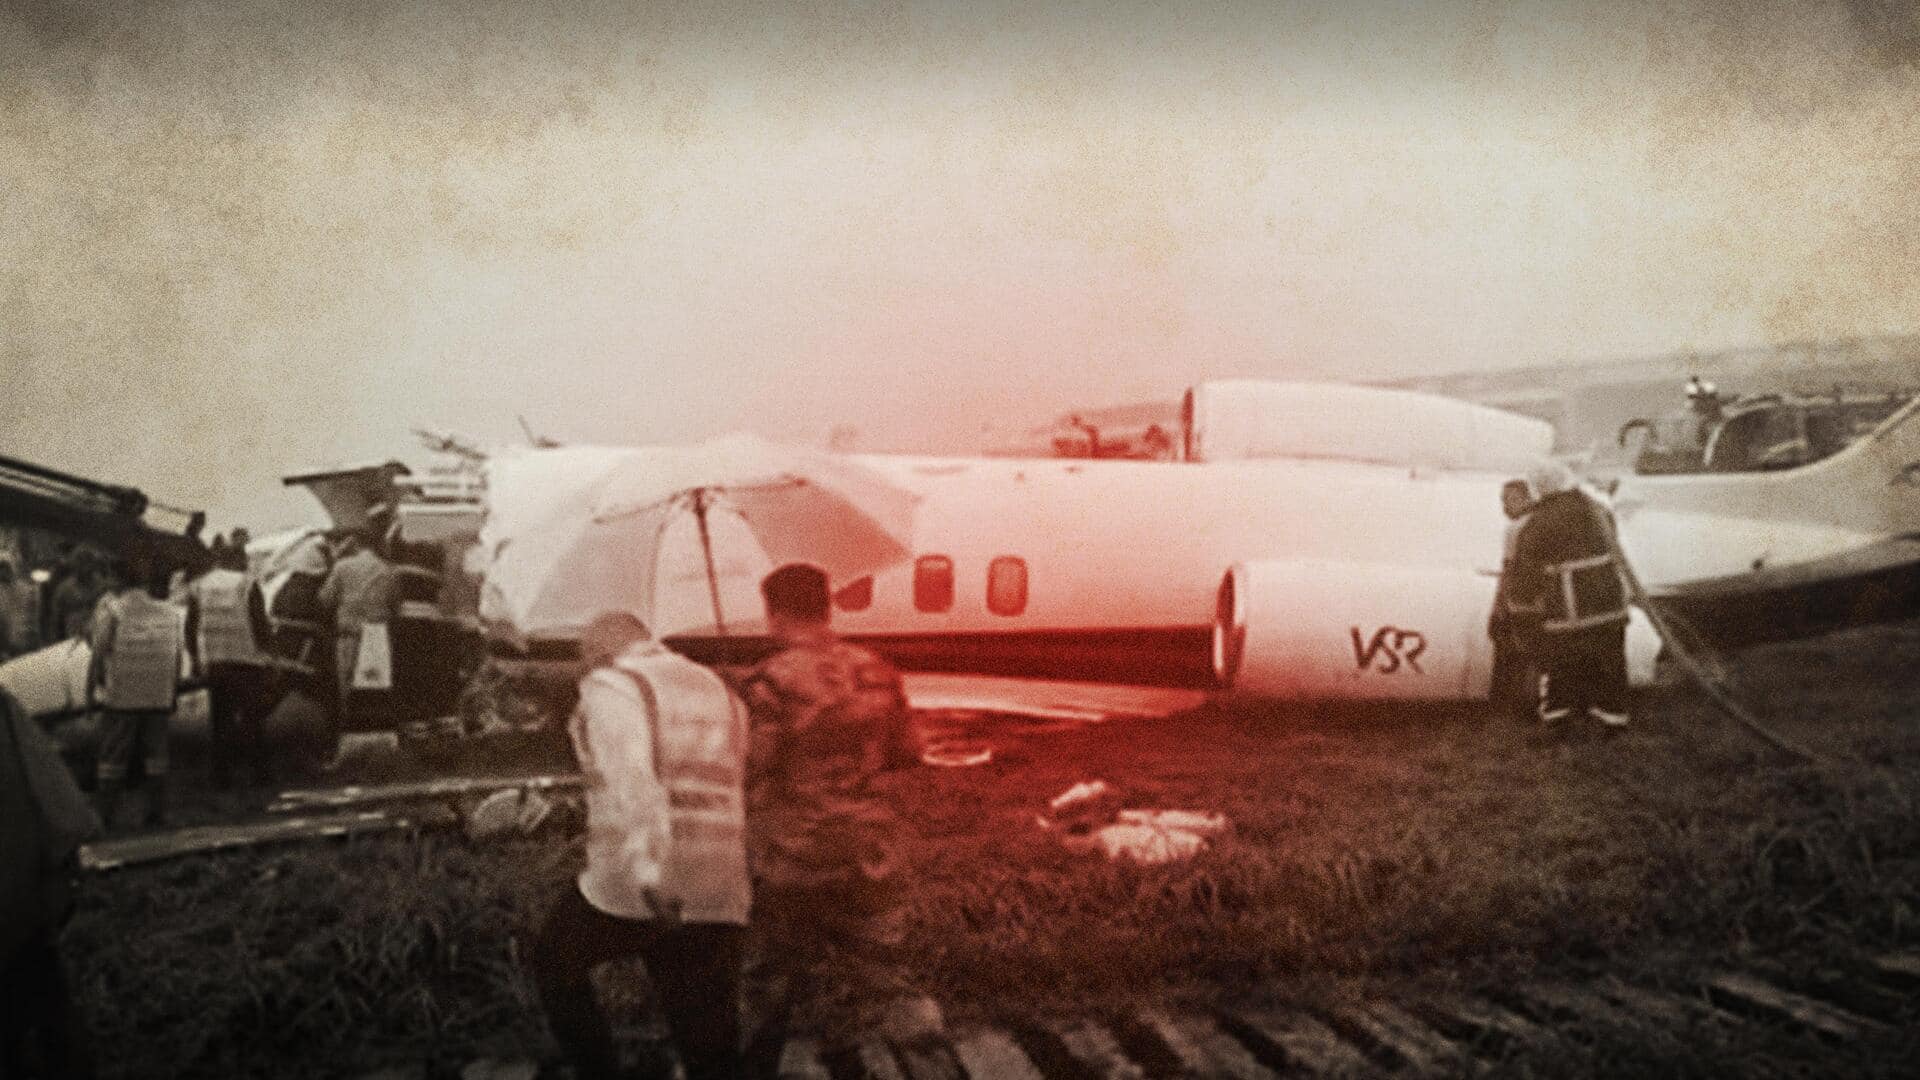 कनाडा: पेड़ से टकराकर विमान दुर्घटनाग्रस्त, 2 भारतीय ट्रेनी पायलटों की मौत